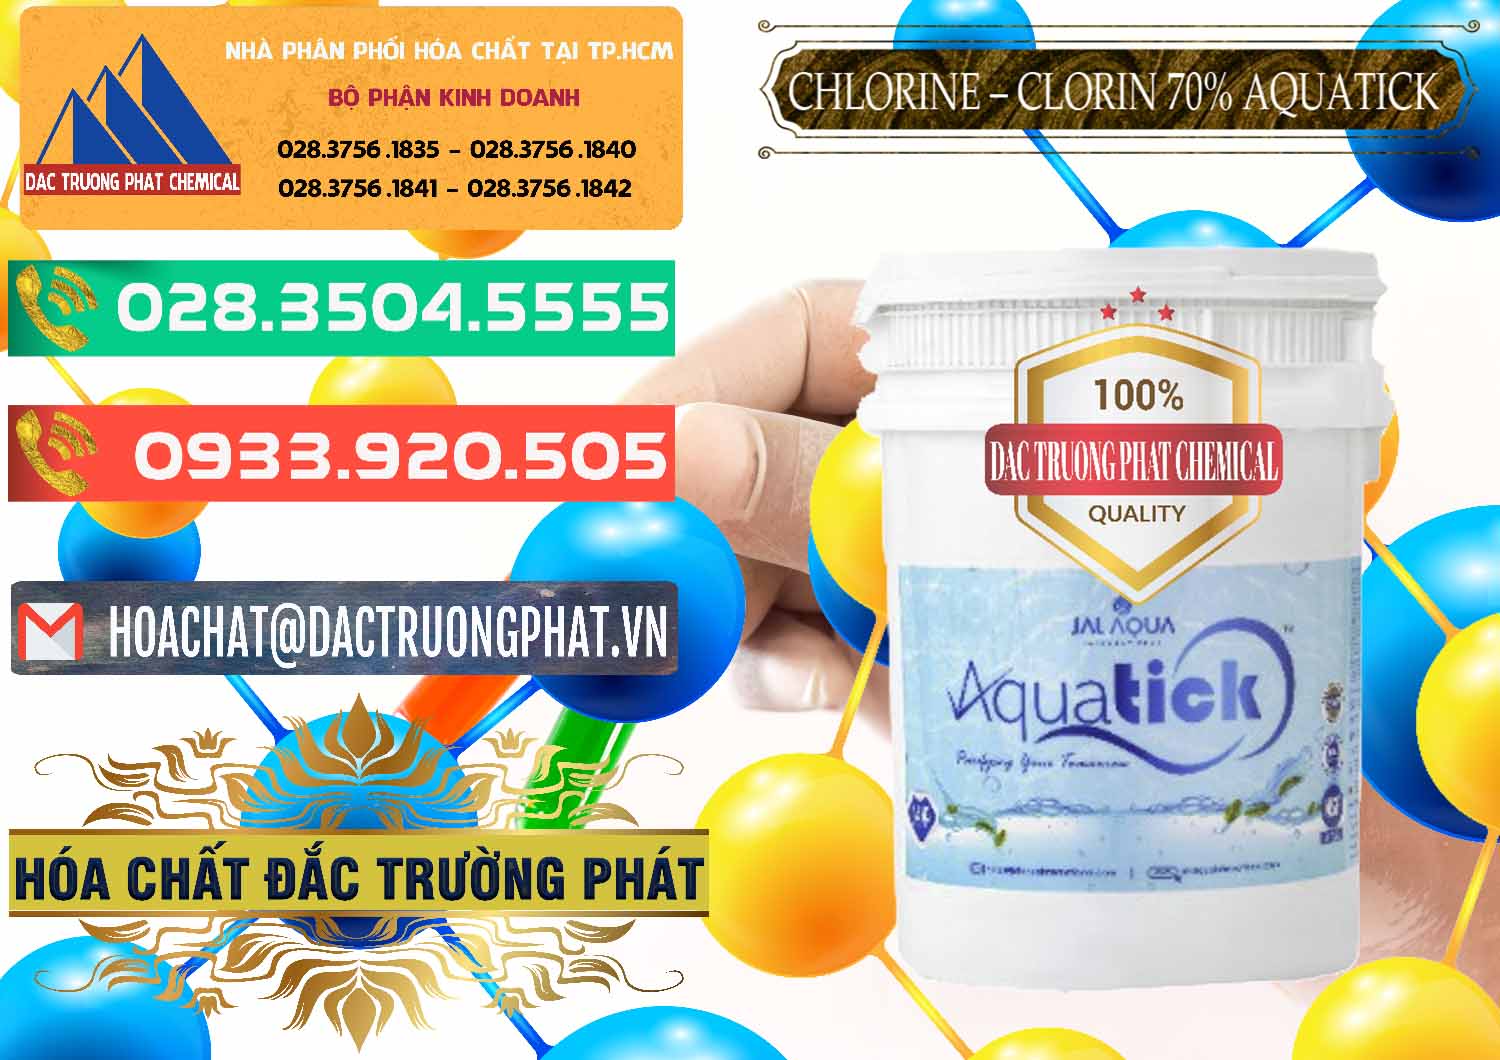 Cty chuyên phân phối - bán Chlorine – Clorin 70% Aquatick Thùng Cao Jal Aqua Ấn Độ India - 0237 - Cung cấp ( kinh doanh ) hóa chất tại TP.HCM - congtyhoachat.com.vn